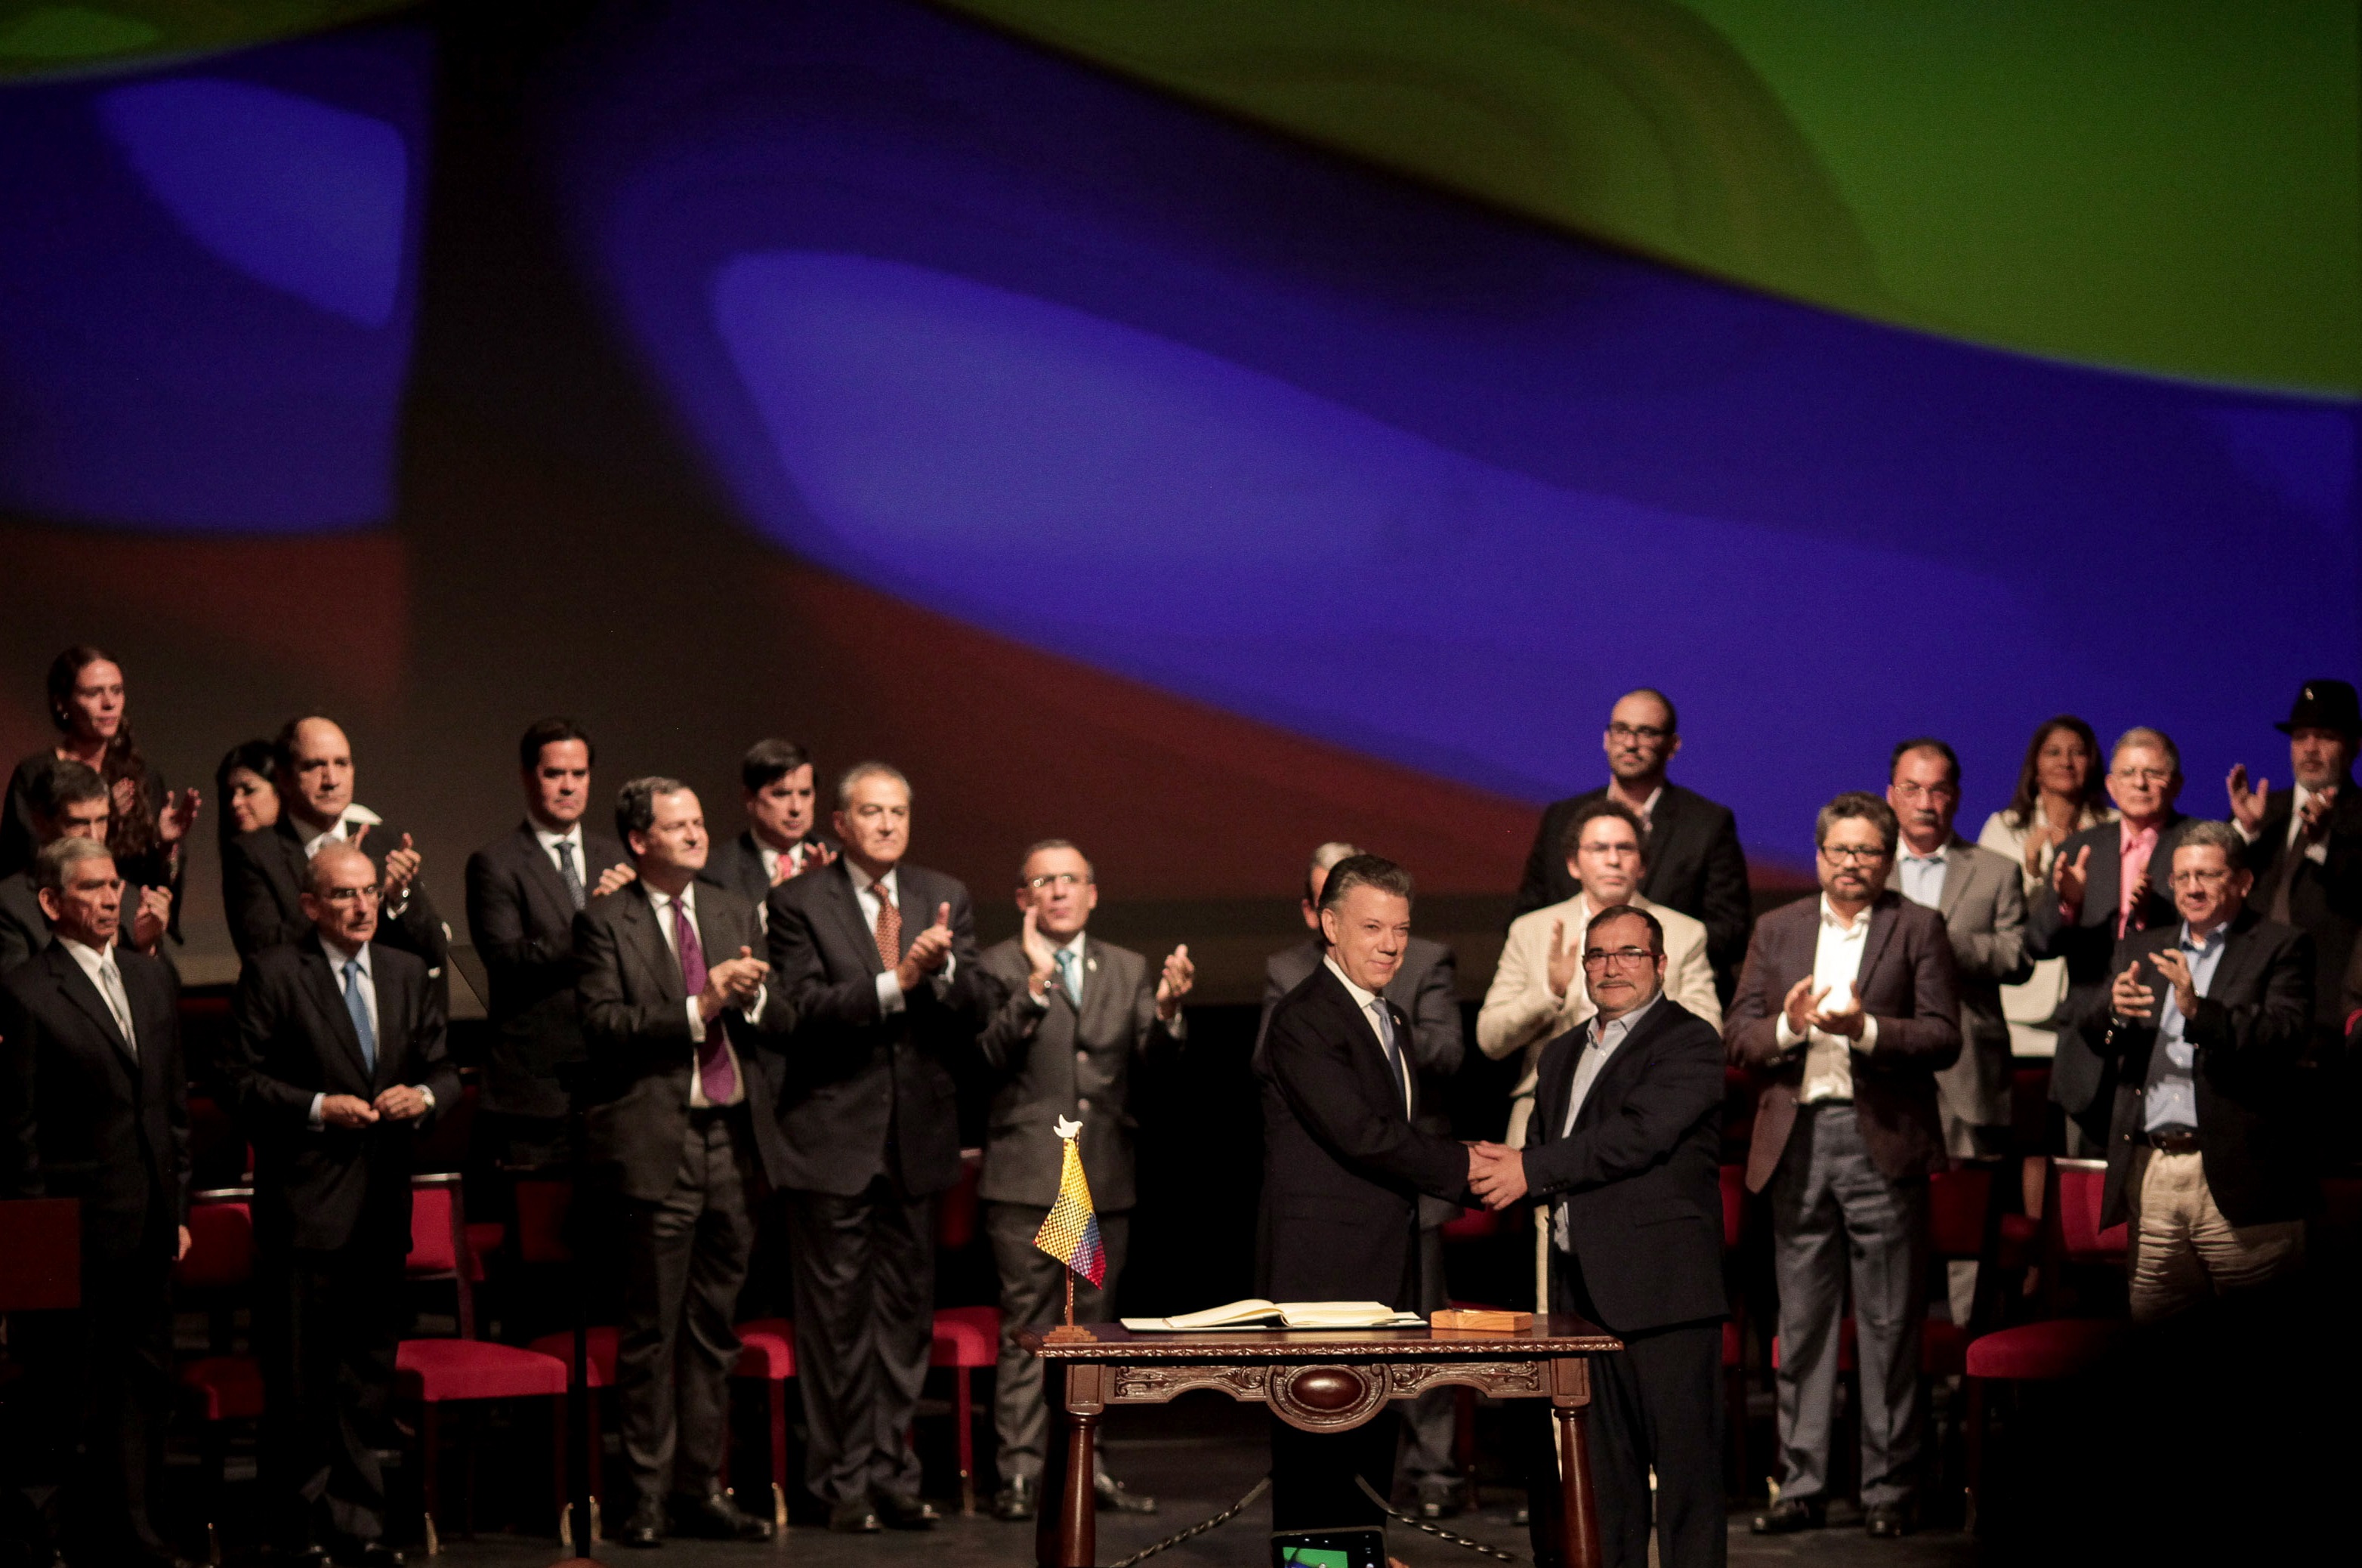 28/01/2021 El expresidente de Colombia Juan Manuel Santos y Rodrigo Londoño, junto al resto del alta mando de las extintas FARC en la firma de los acuerdos de paz de 2016.
POLITICA SUDAMÉRICA COLOMBIA INTERNACIONAL
JHON PAZ / ZUMA PRESS / CONTACTOPHOTO
